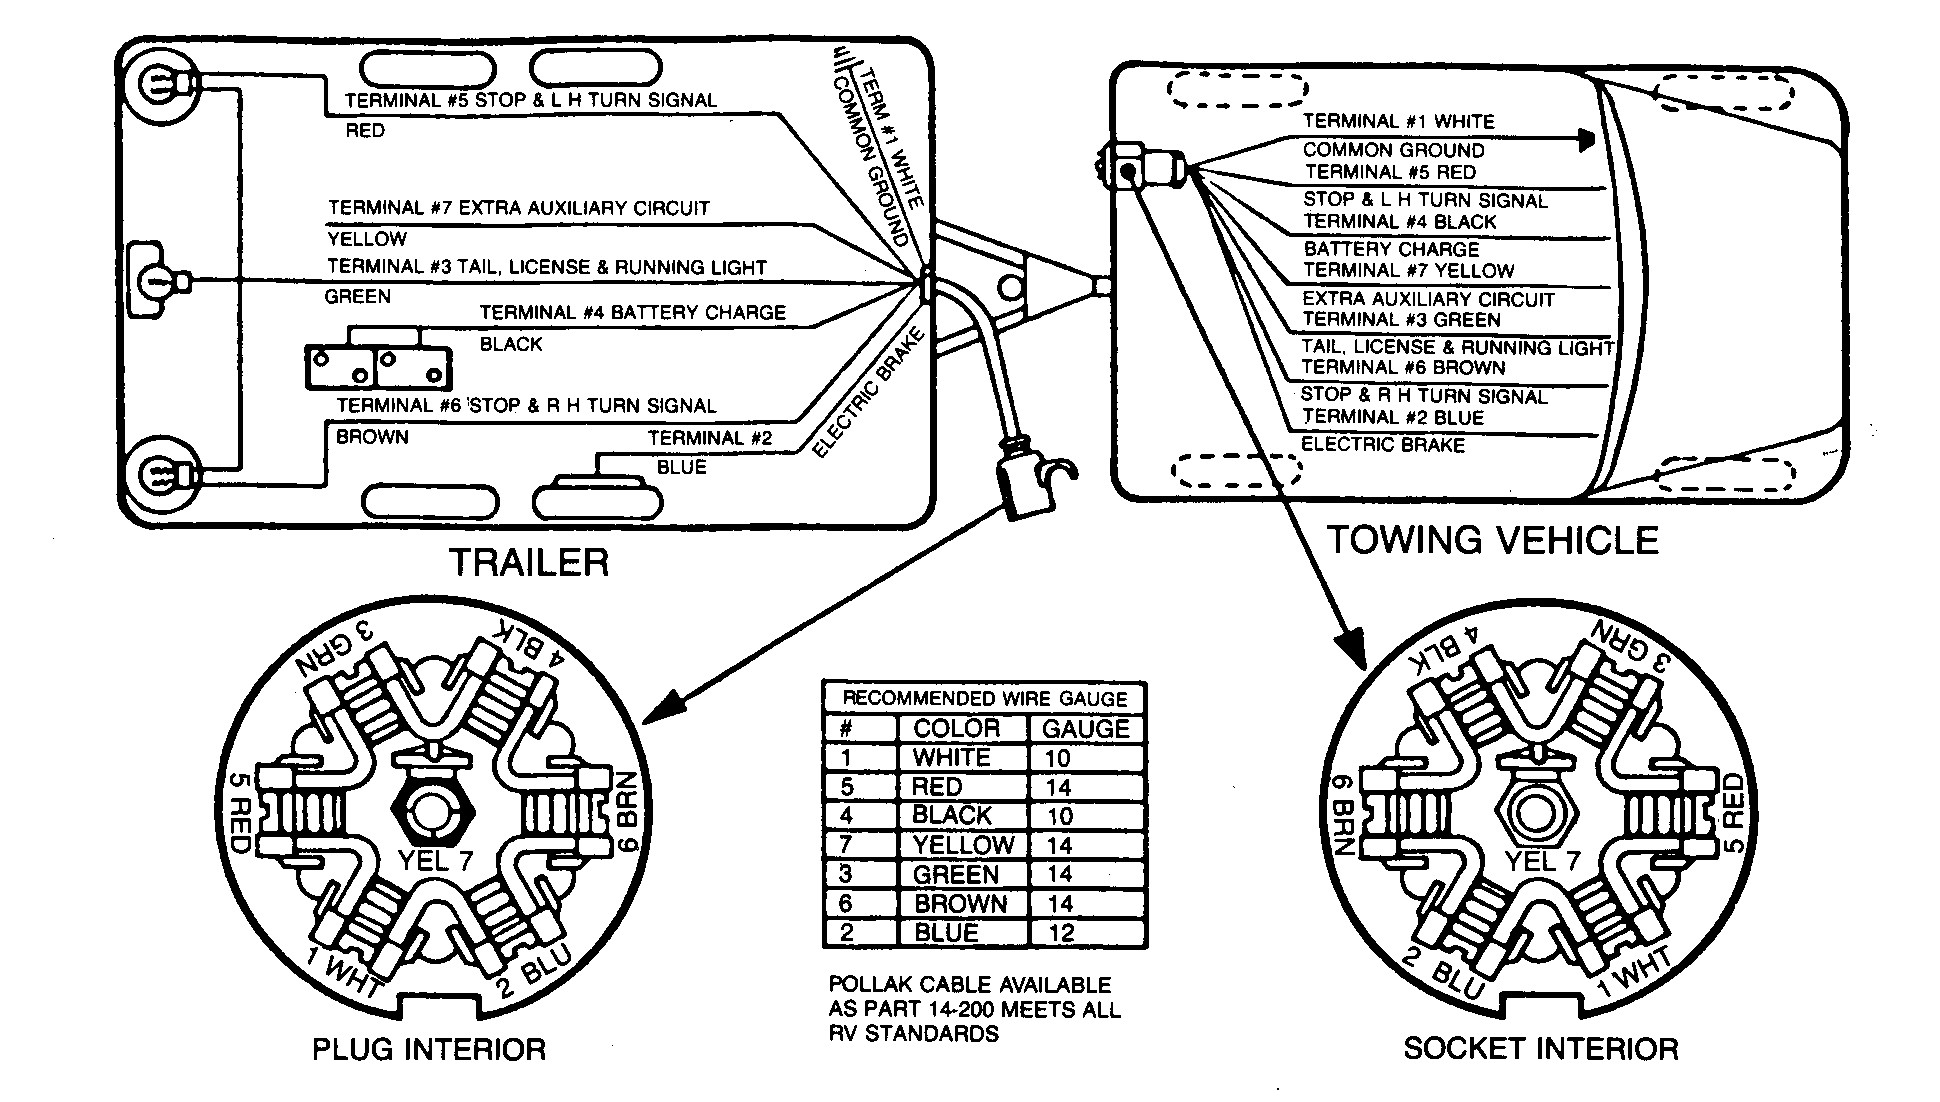 Pj Trailer Wiring Diagram Pj Trailers Wiring Diagrams Wiring Library